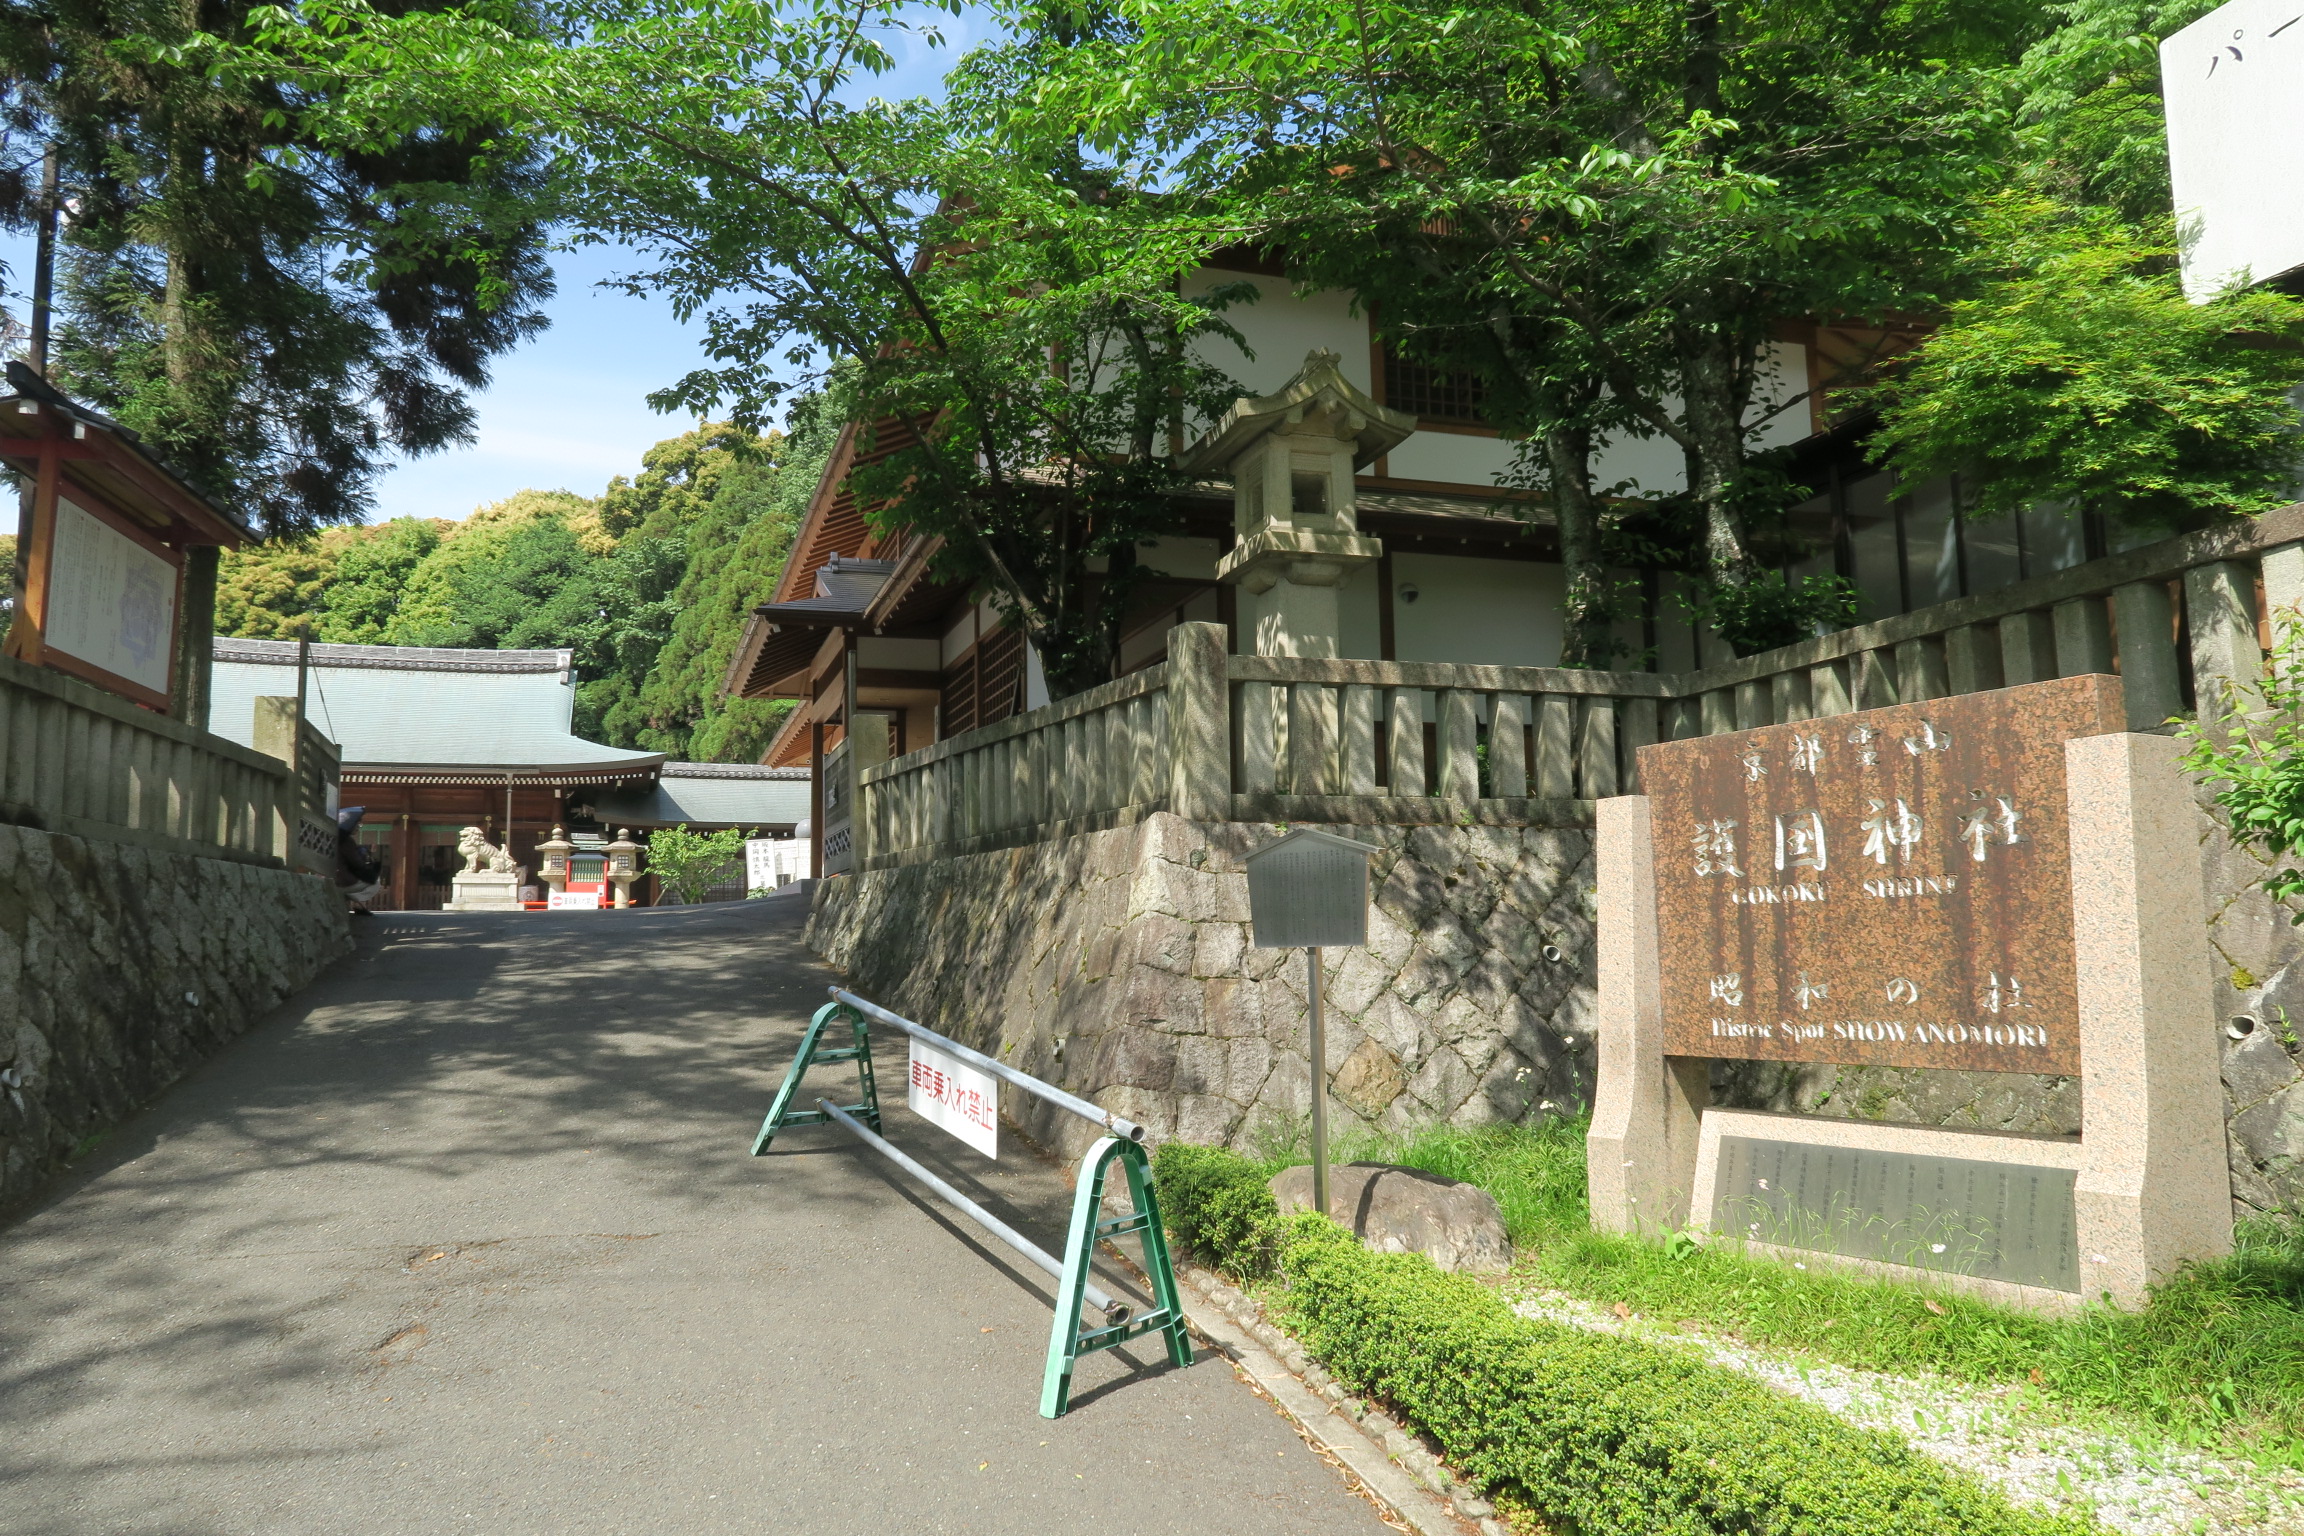 京都霊山護国神社の入口。ここには多くの志士たちの墓碑が建てられています。